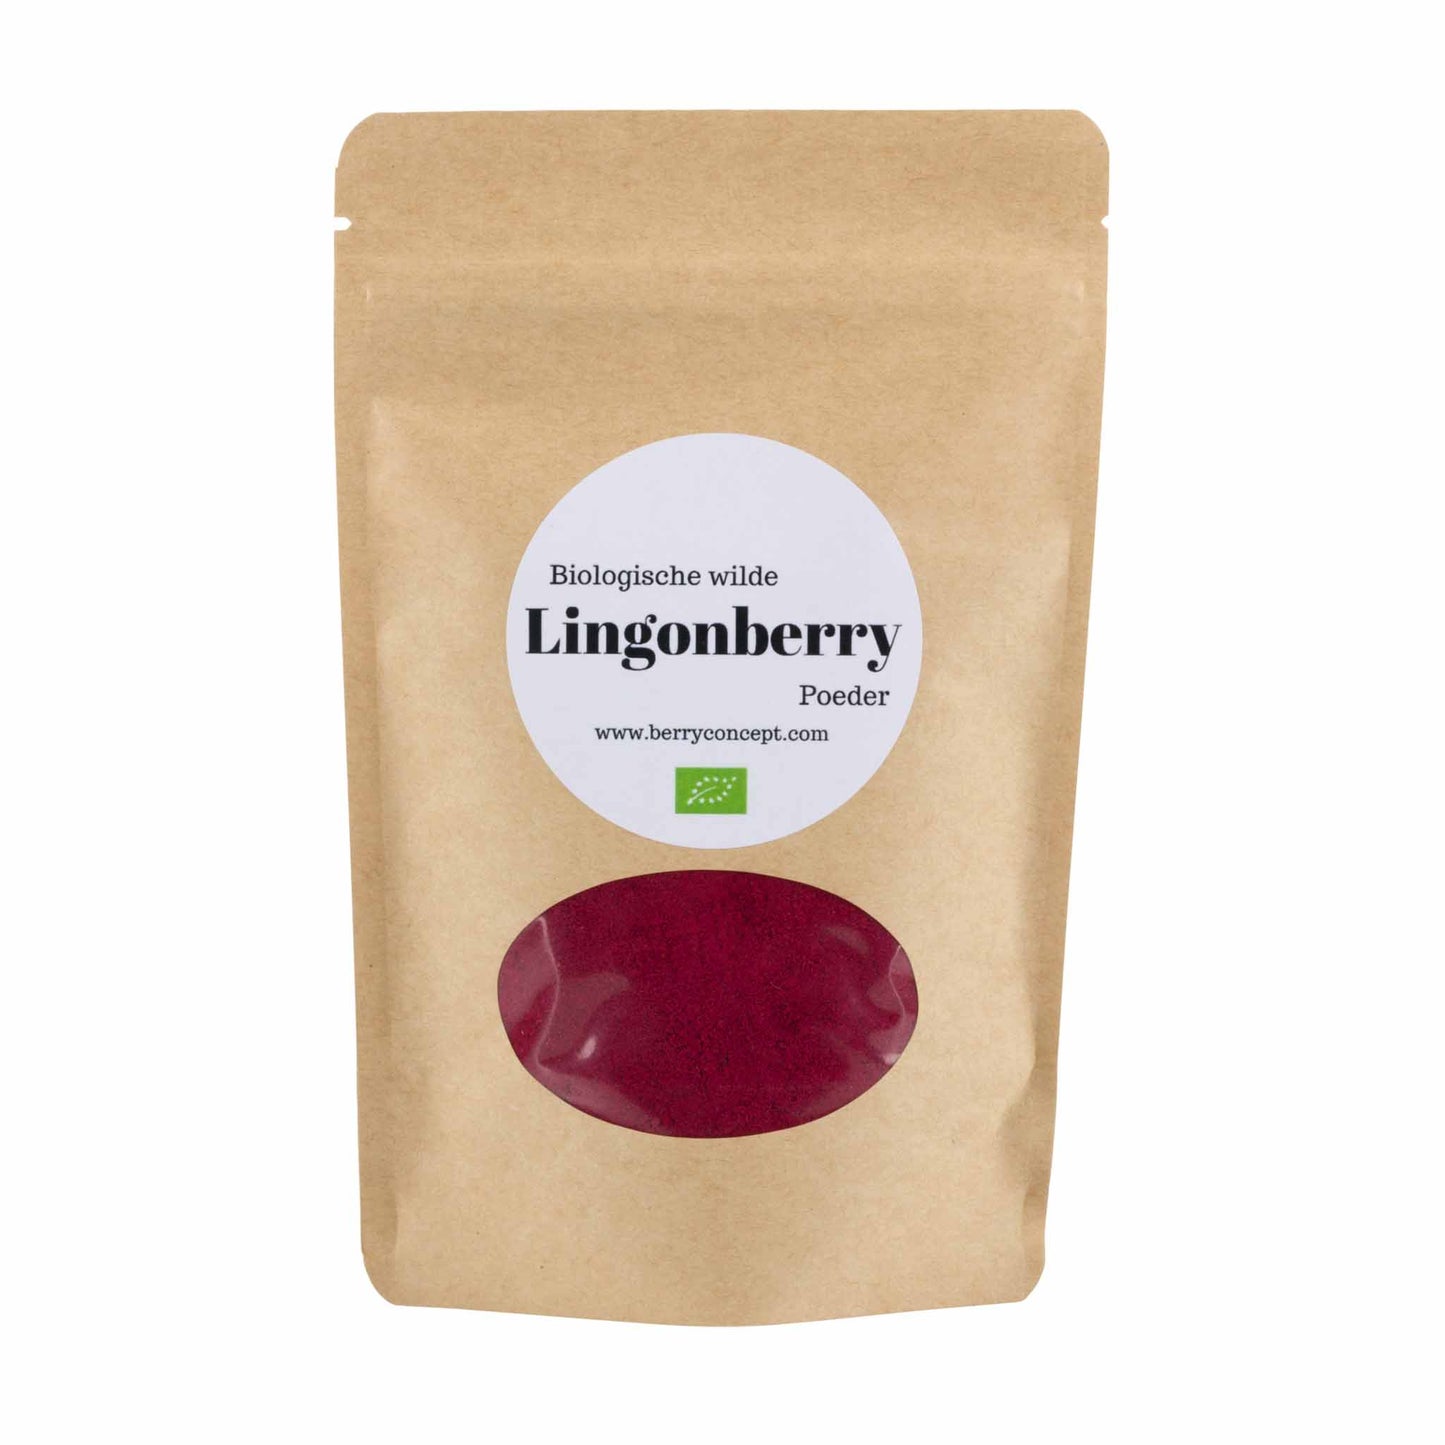 Biologische wilde lingonberry poeder 150g